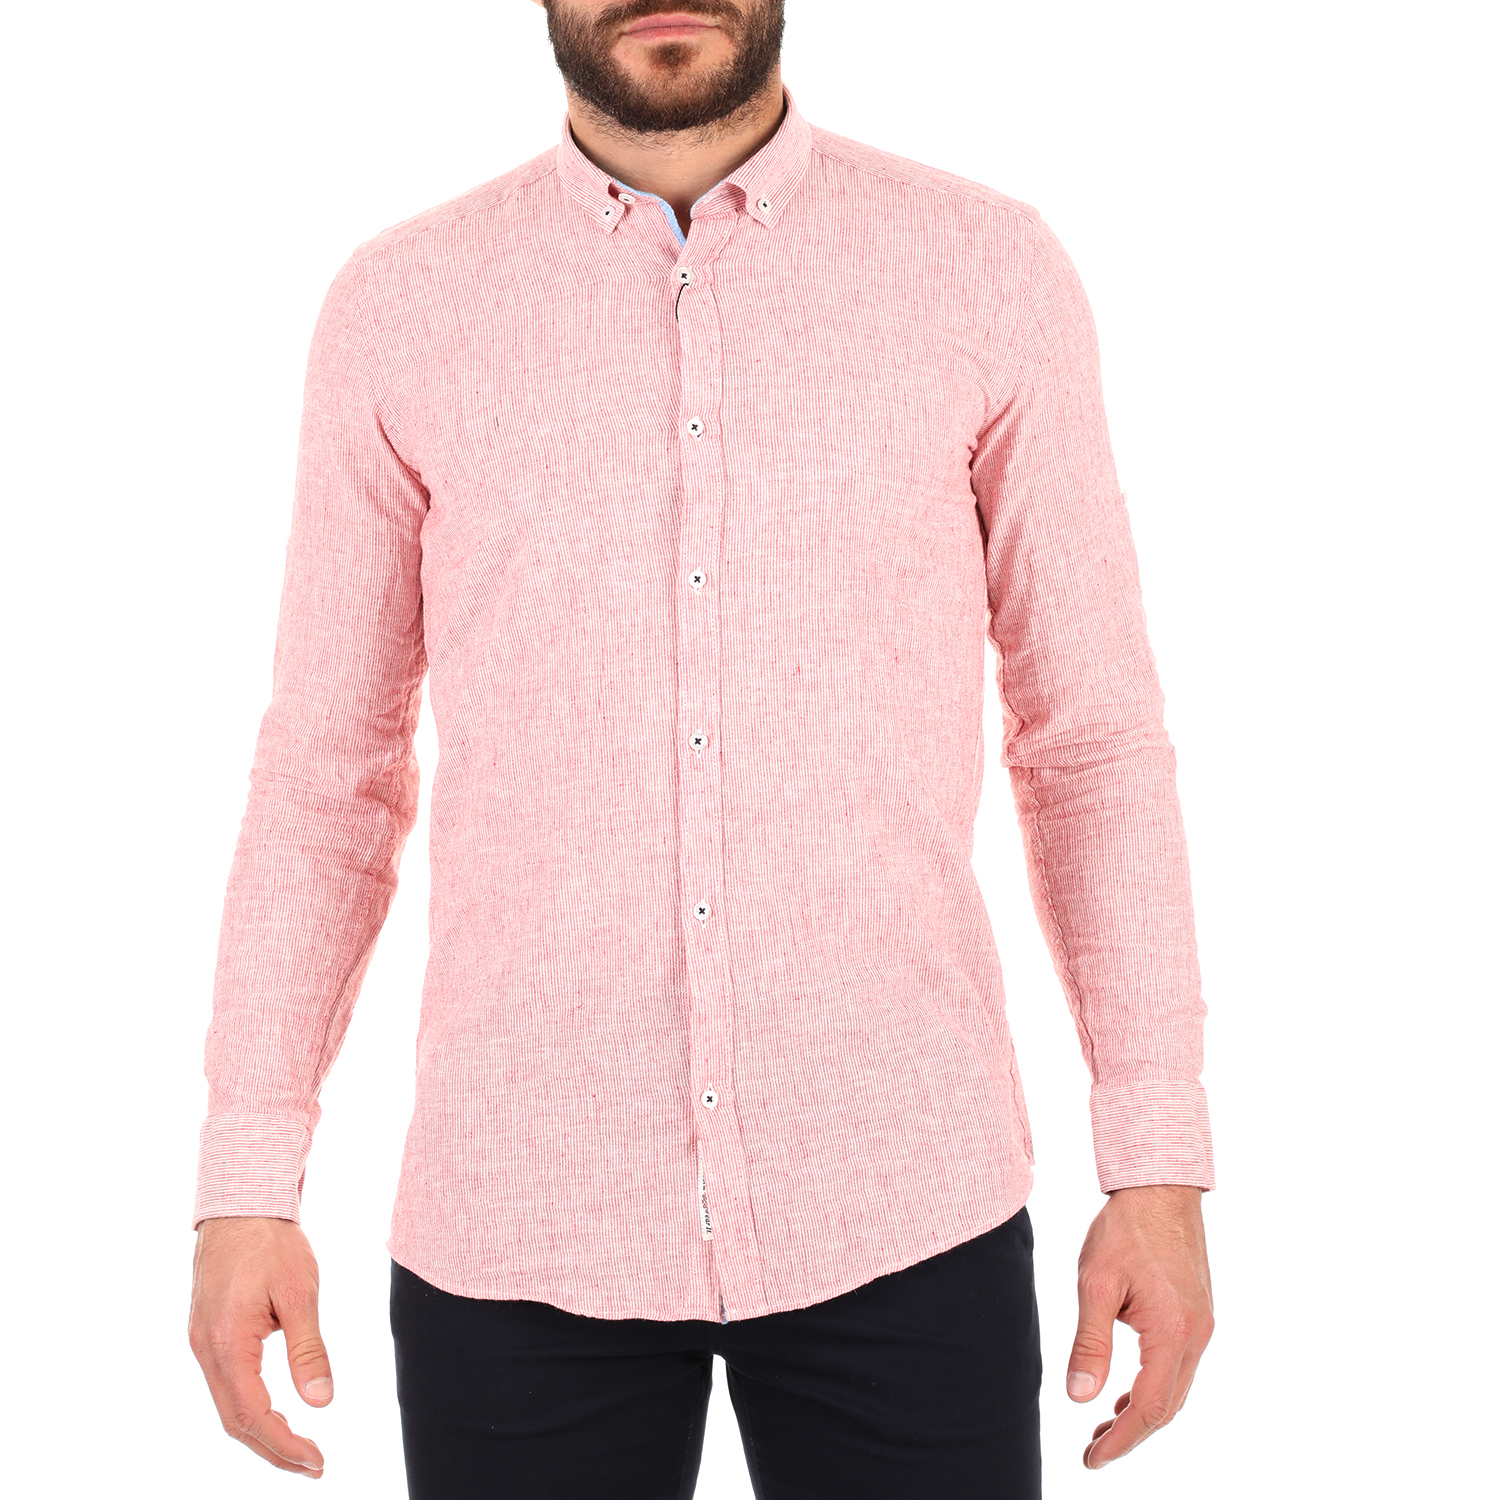 Ανδρικά/Ρούχα/Πουκάμισα/Μακρυμάνικα DORS - Ανδρικό πουκάμισο DORS ροζ